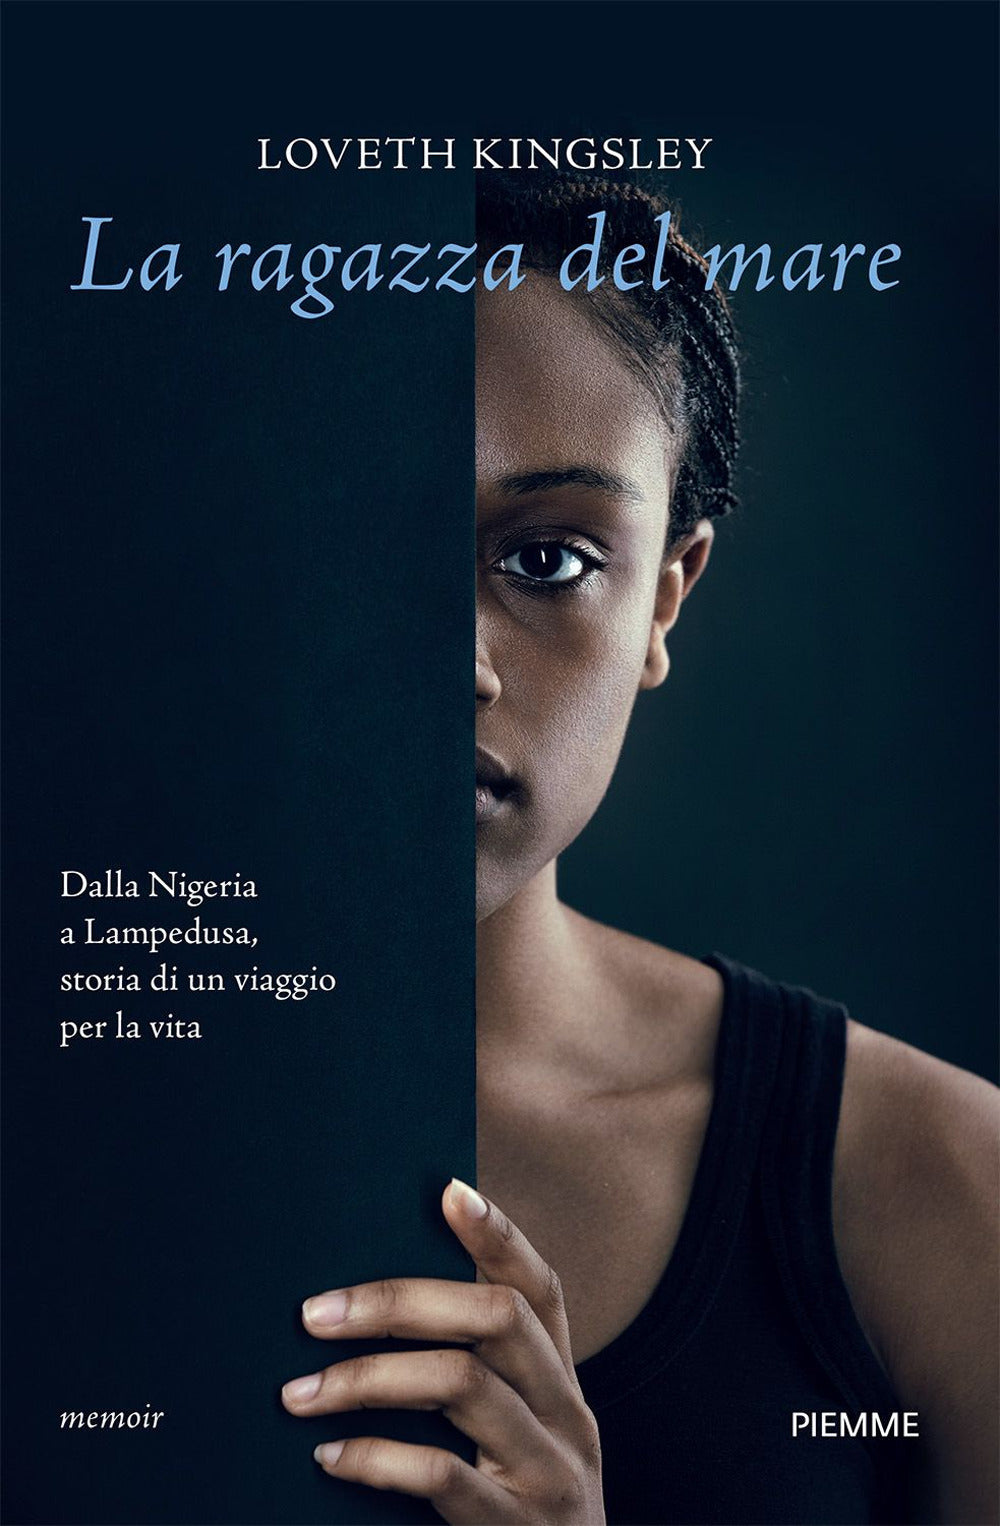 La ragazza del mare. Dalla Nigeria a Lampedusa, storia vera di un viaggio per la vita